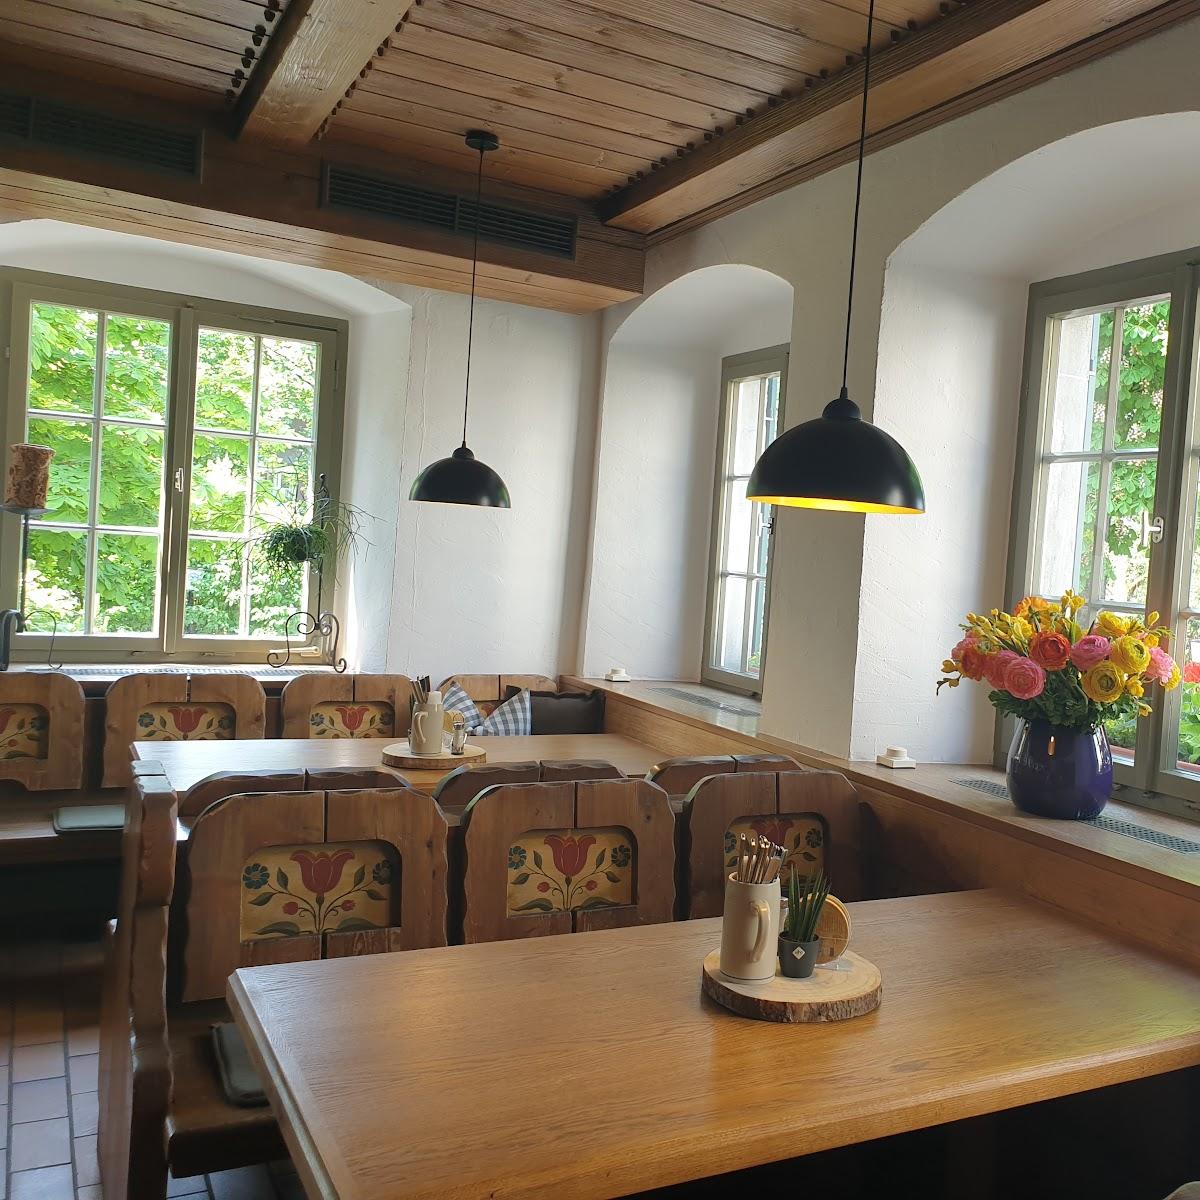 Restaurant "Gasthaus Zur Traube" in Weiler-Simmerberg